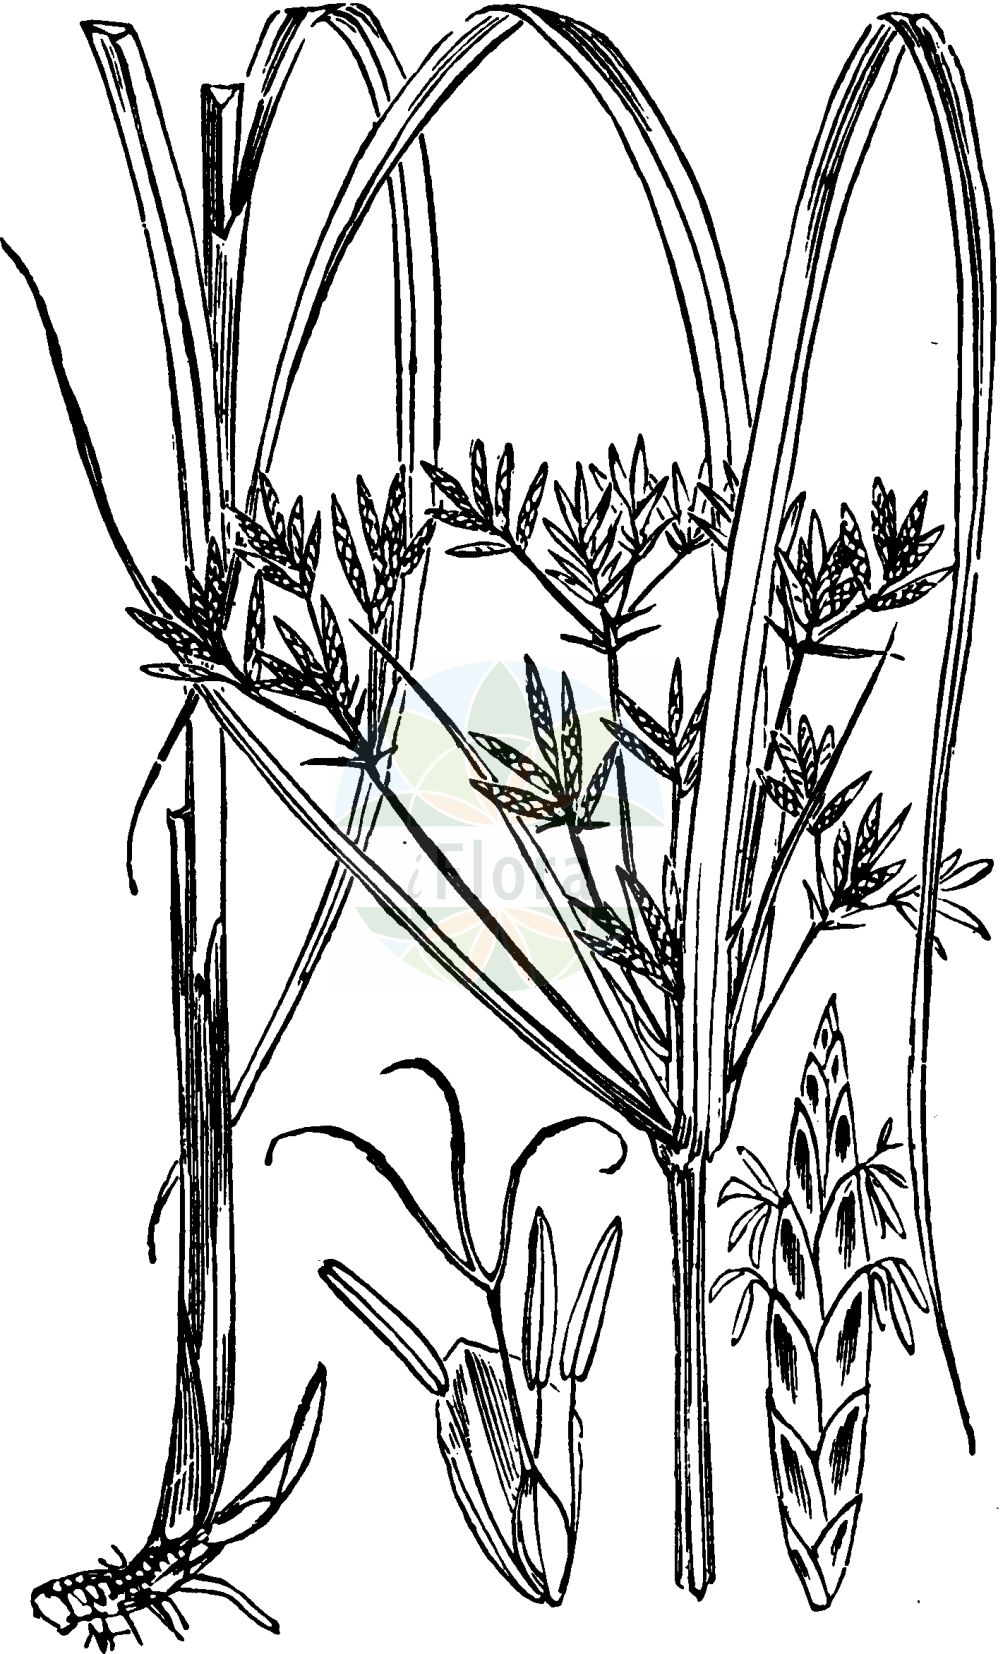 Historische Abbildung von Cyperus longus (Hohes Zypergras - Galingale). Das Bild zeigt Blatt, Bluete, Frucht und Same. ---- Historical Drawing of Cyperus longus (Hohes Zypergras - Galingale). The image is showing leaf, flower, fruit and seed.(Cyperus longus,Hohes Zypergras,Galingale,Chlorocyperus longus,Cyperus badius,Cyperus longus,Cyperus preslii,Pycreus badius,Pycreus longus,Hohes Zypergras,Langes Zypergras,Galingale,Sweet Cyperus,Southern Globethistle,Cyperus,Zypergras,Flatsedge,Cyperaceae,Sauergräser,Sedge family,Blatt,Bluete,Frucht,Same,leaf,flower,fruit,seed,Fitch et al. (1880))